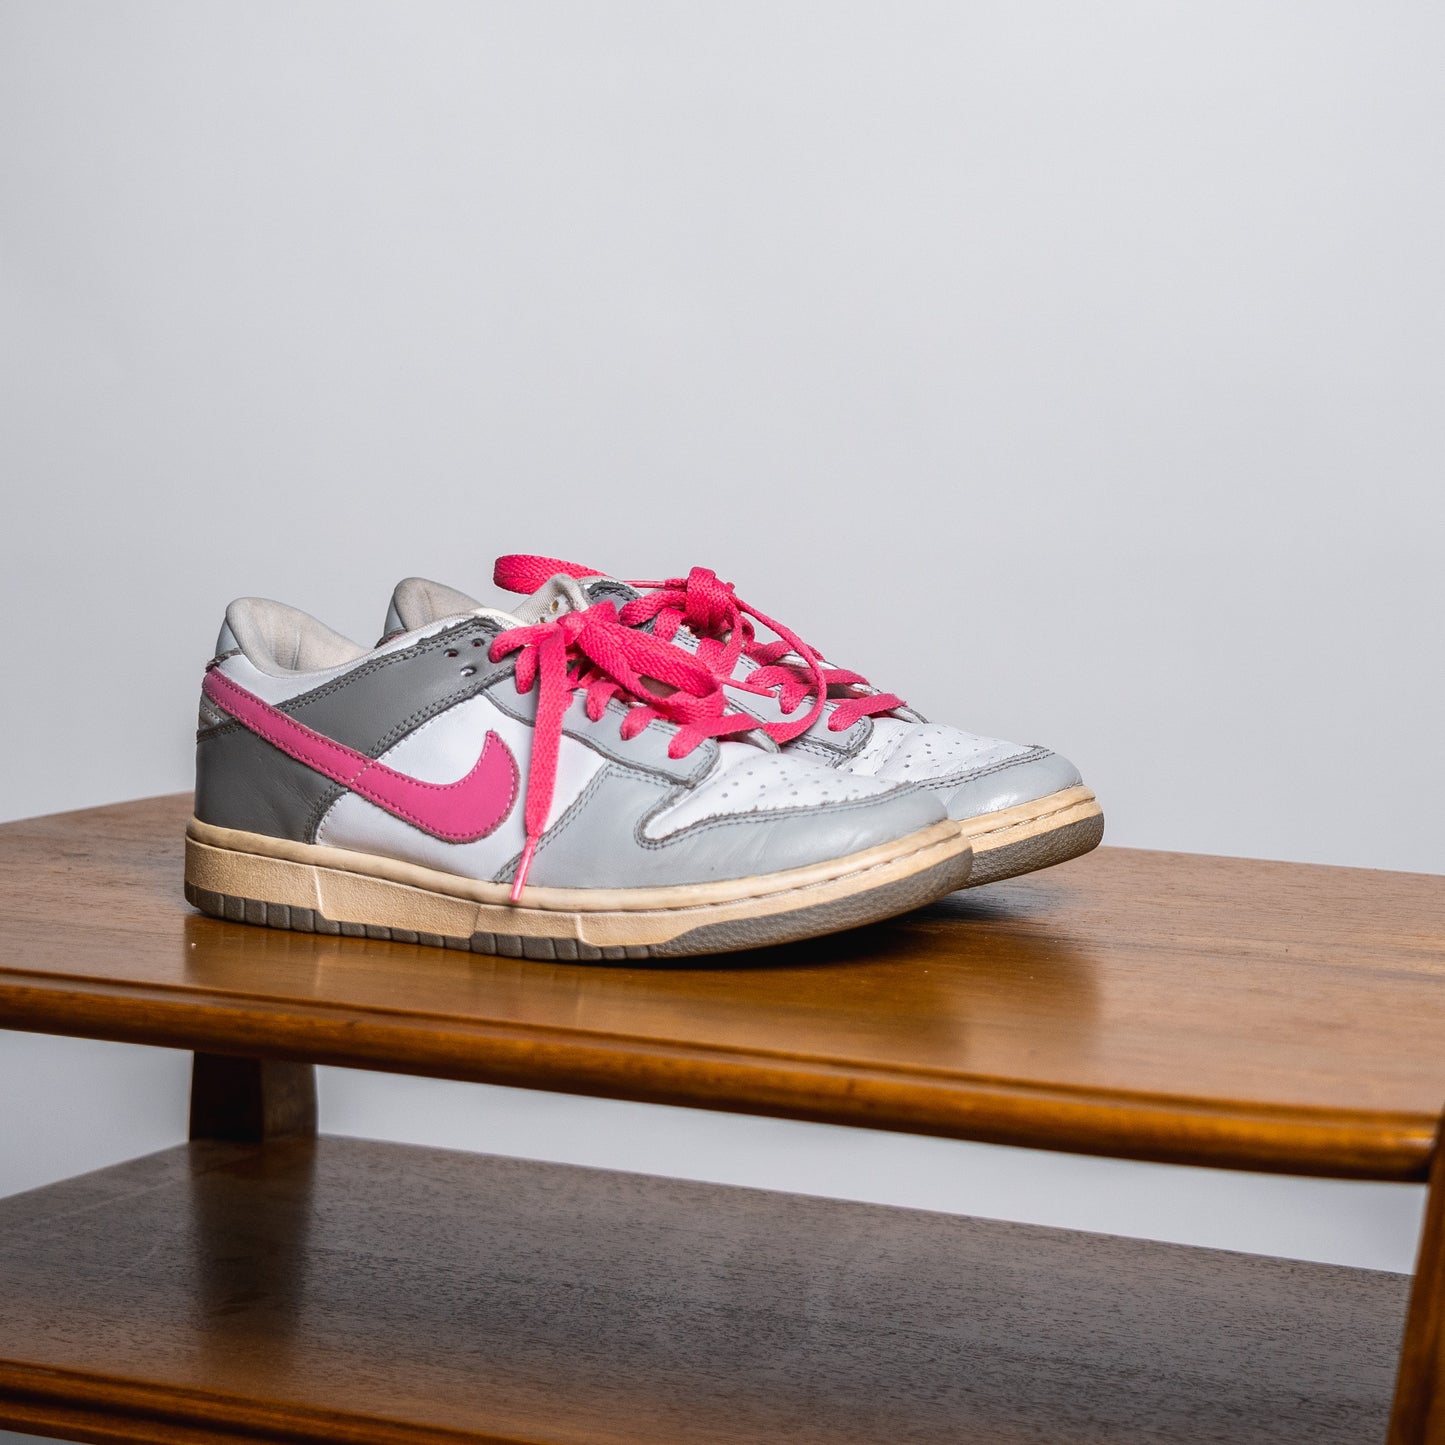 Nike Dunk Low "Grey/Pink" // Grösse EU 40 // Sneaker